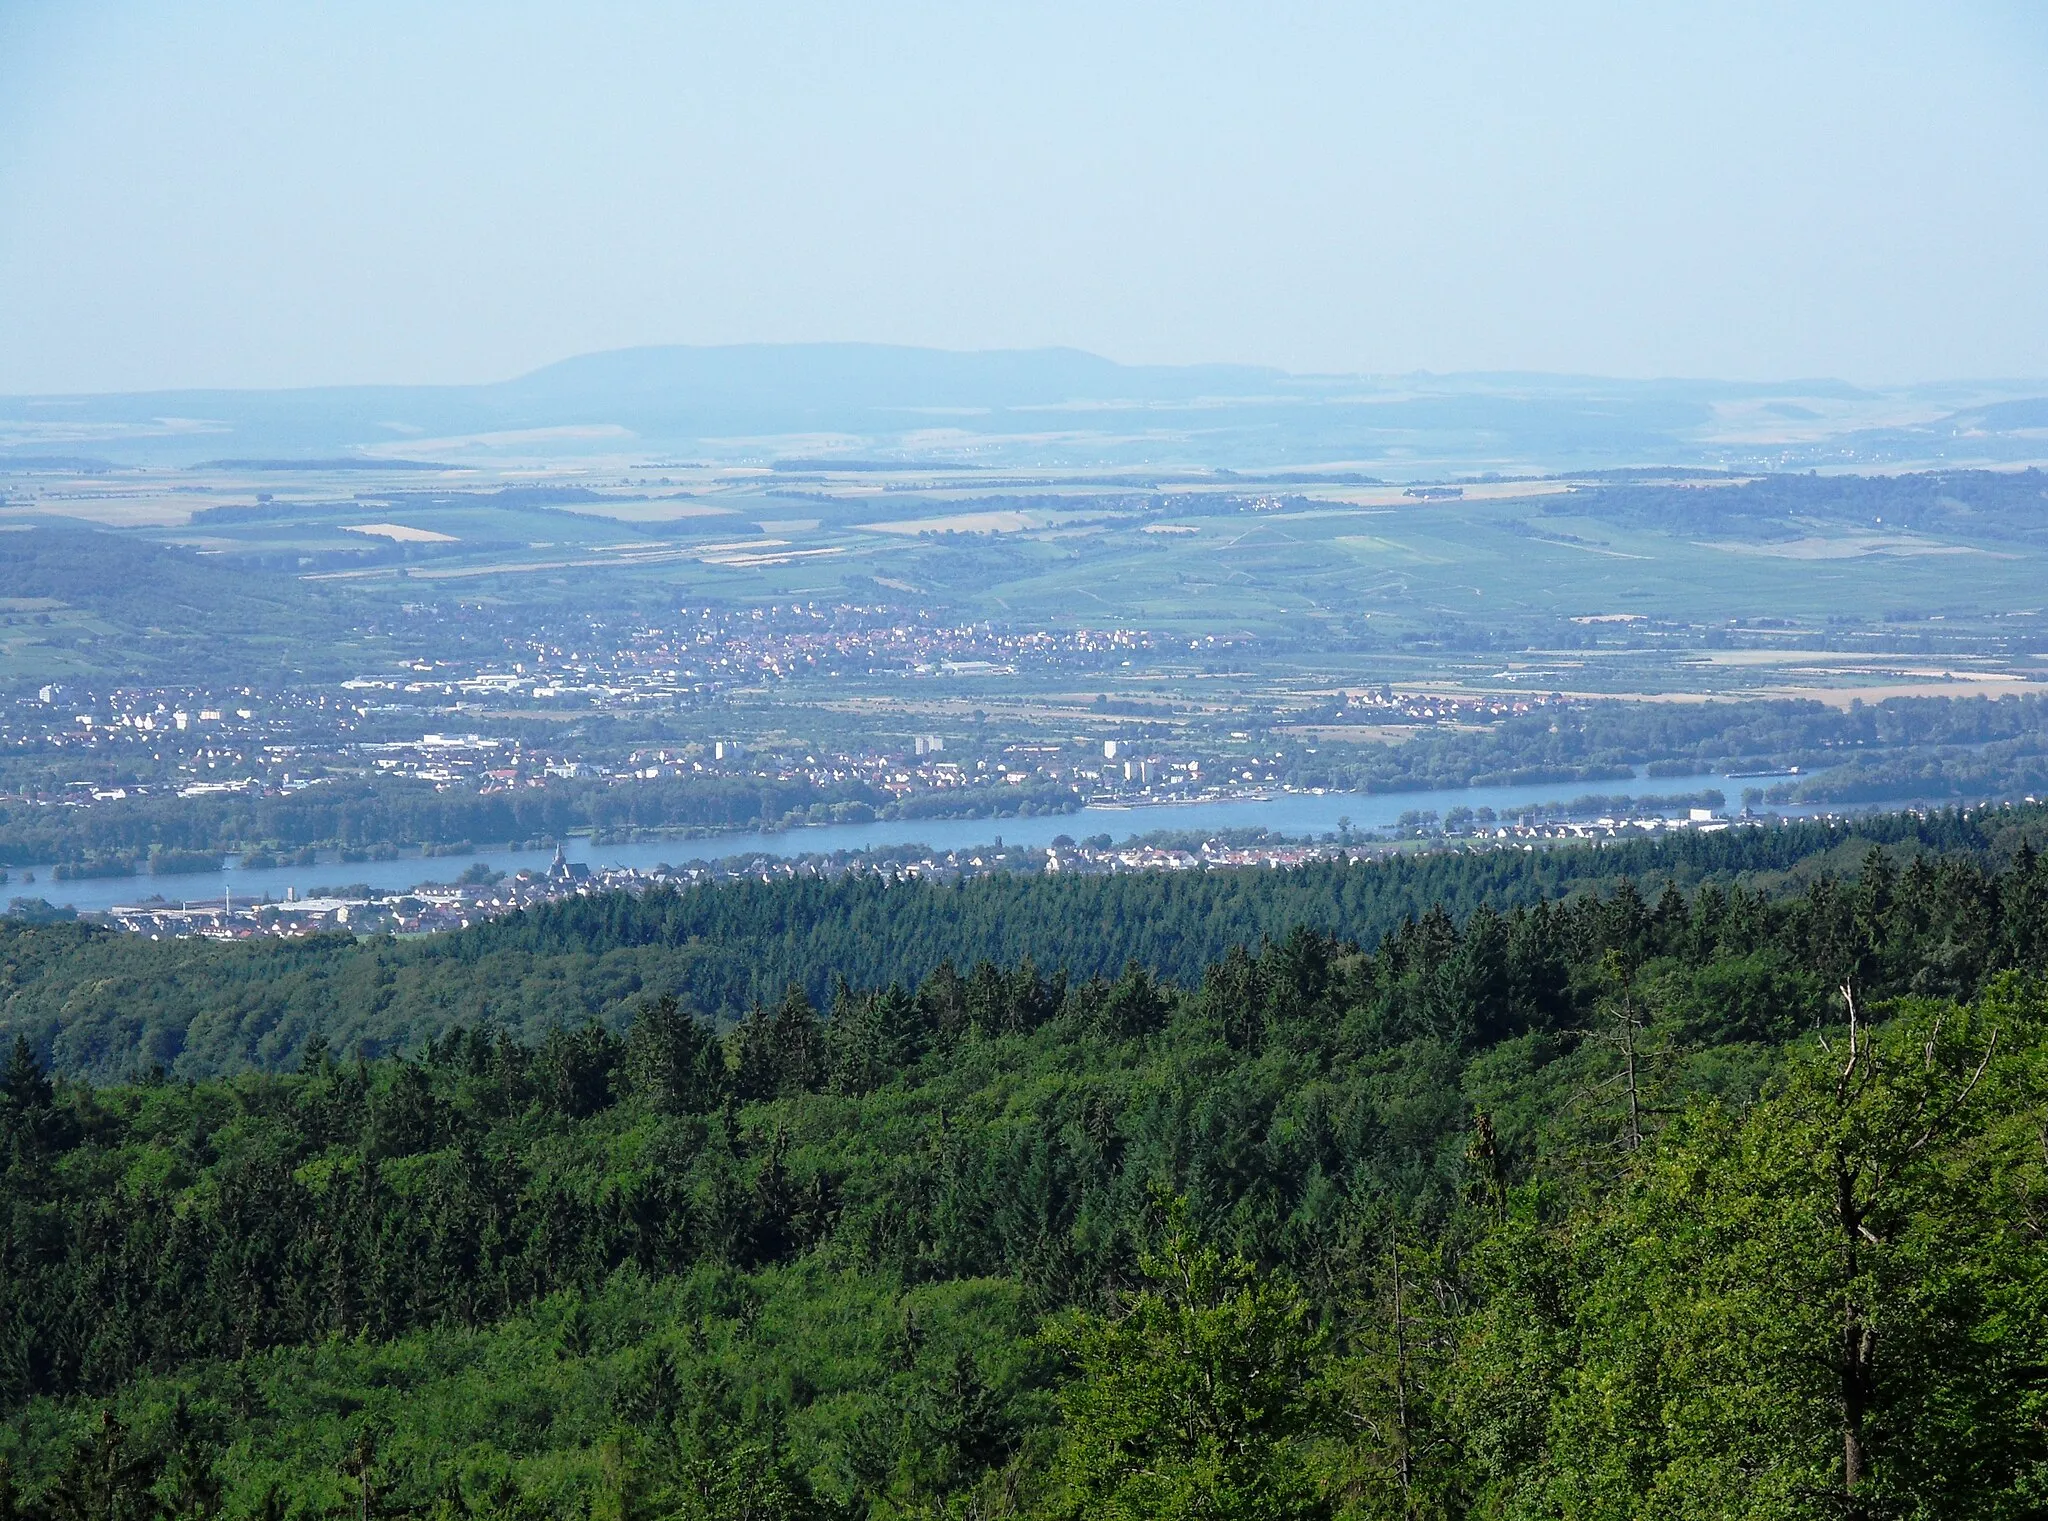 Photo showing: Blick von der Oberkante der Erddeponie östlich des Erbacher Kopfs (ca. 520 m) auf den vom Wald halb verdeckten Rheingauort Oestrich sowie Ingelheim auf der gegenüberliegenden Rheinseite; am Horizont der 50 km entfernte Donnersberg.